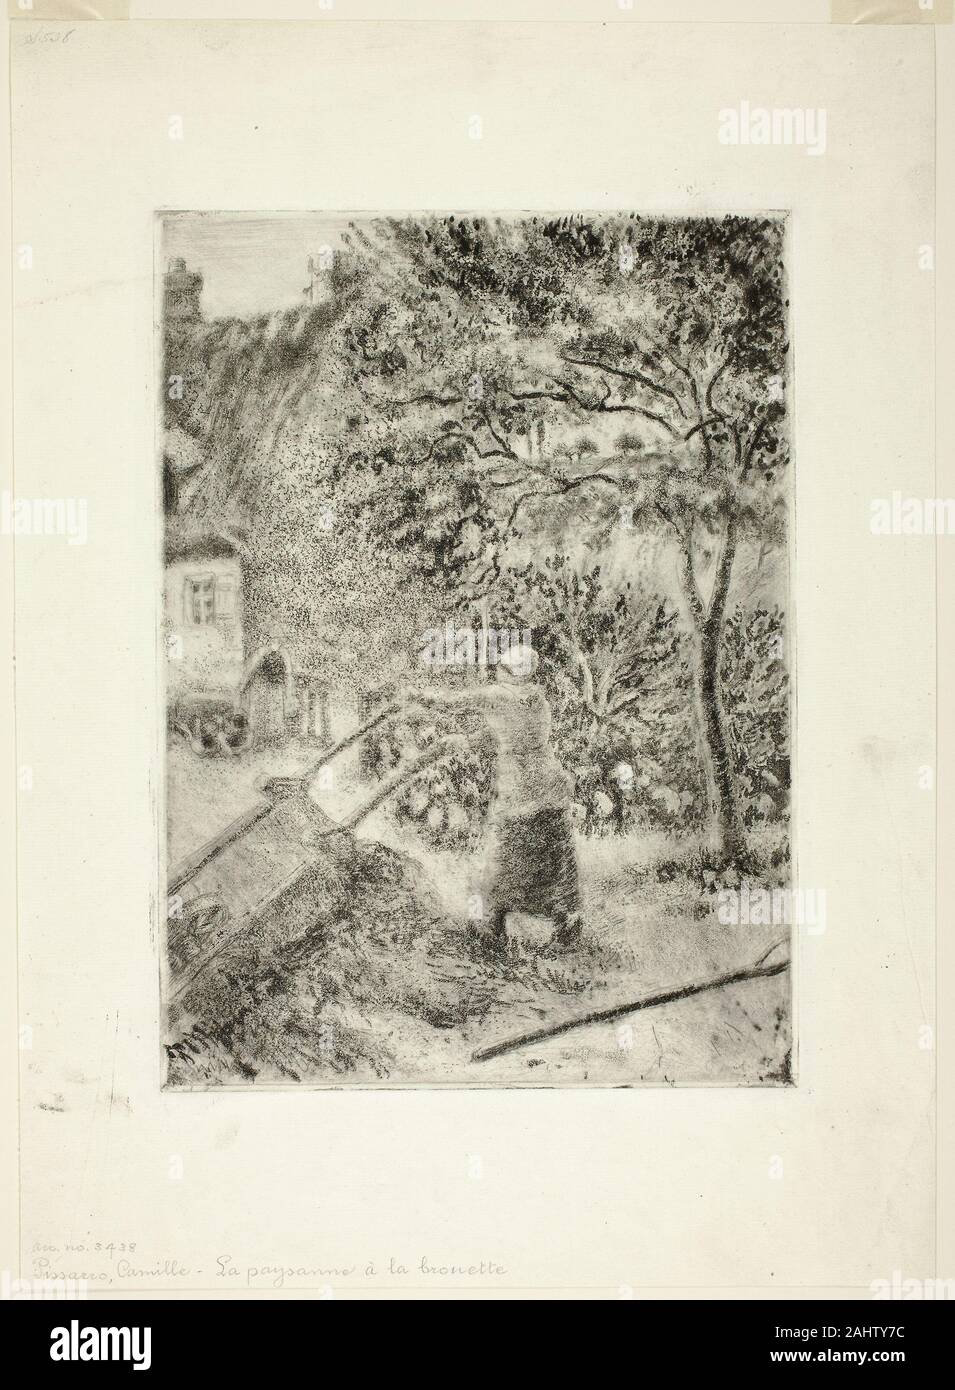 Camille Pissarro. La donna lo svuotamento di una carriola. 1880. La Francia. Acquatinta e puntasecca in nero su avorio di cui la carta Foto Stock